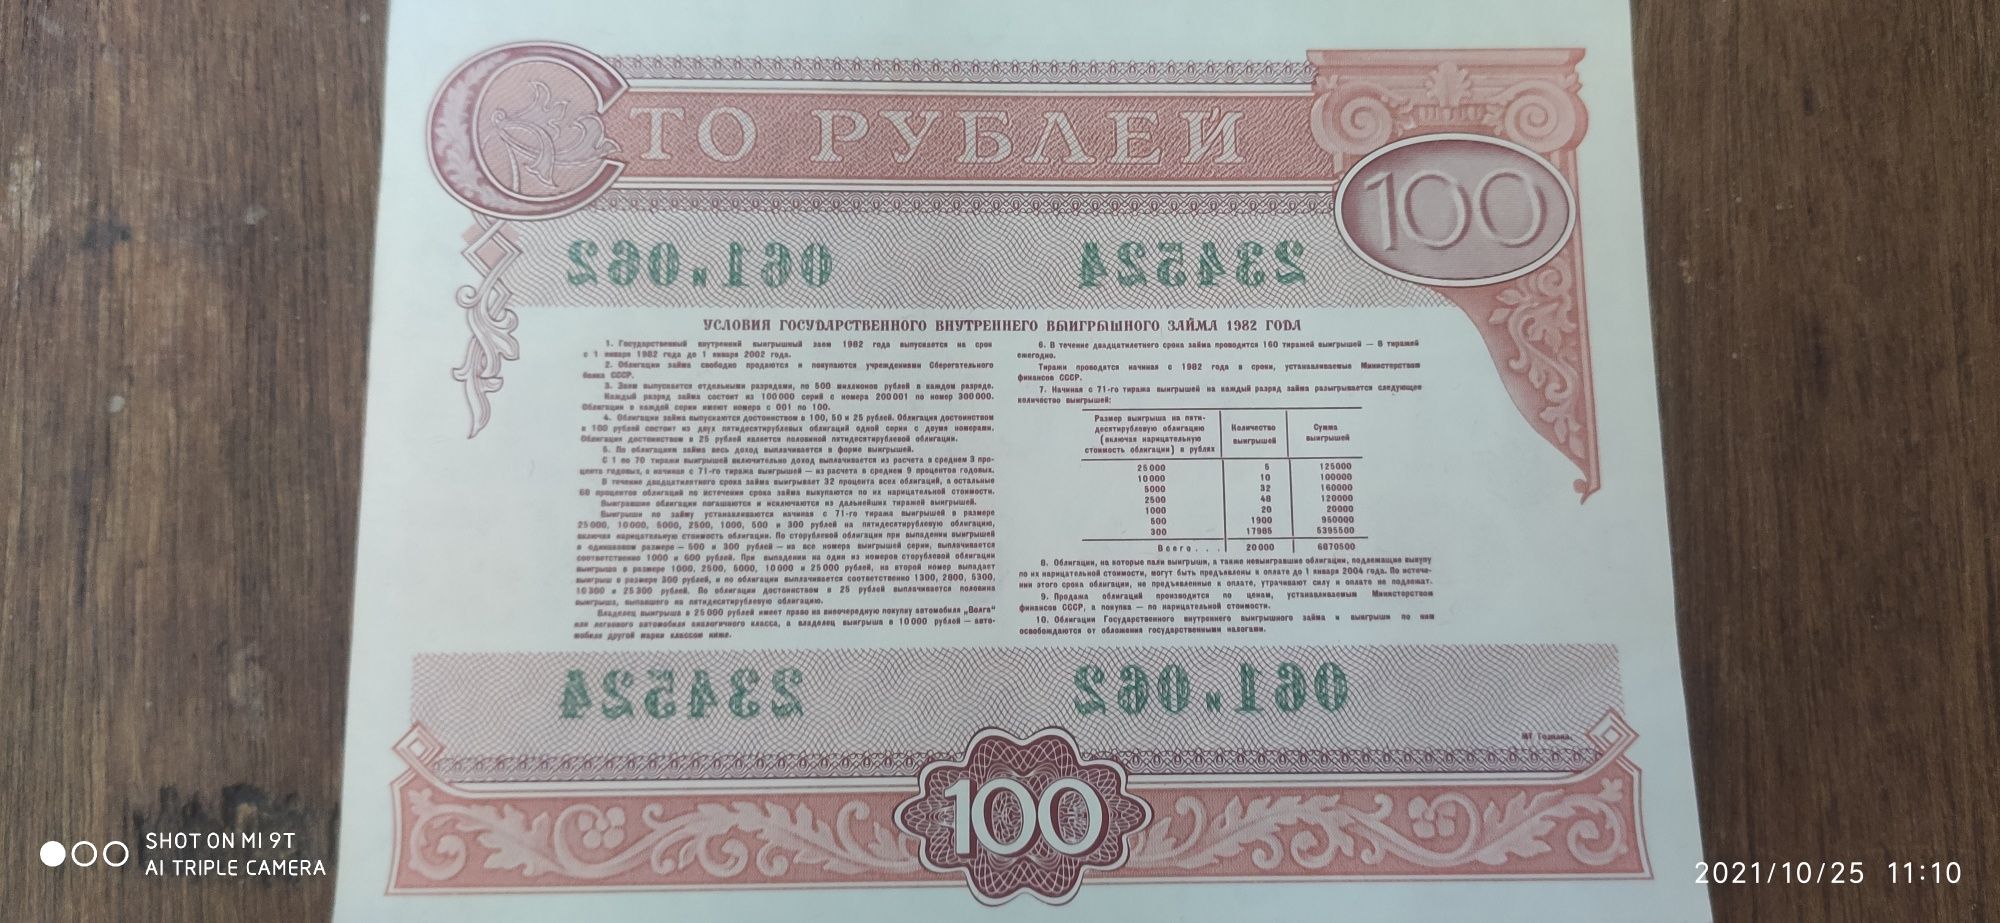 Старые деньги грн купоны рубли